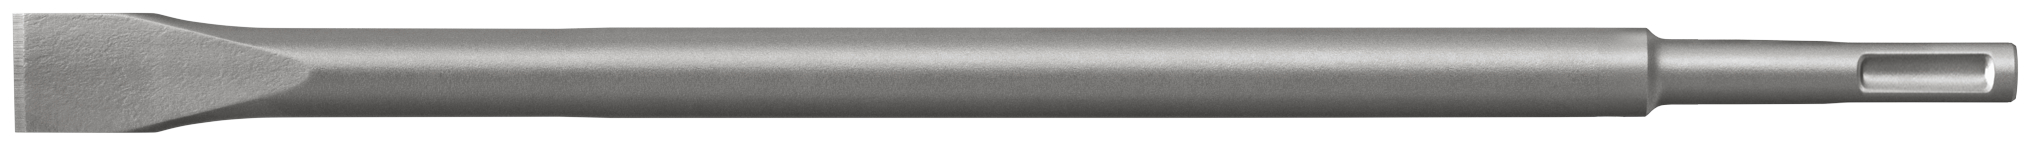 fischer Punta martelli perforatori SDS Plus I M-Flach 20-250 (1 Pz.) Scalpello ad alte prestazioni con attacco SDS Plus e SDS Max fie1624